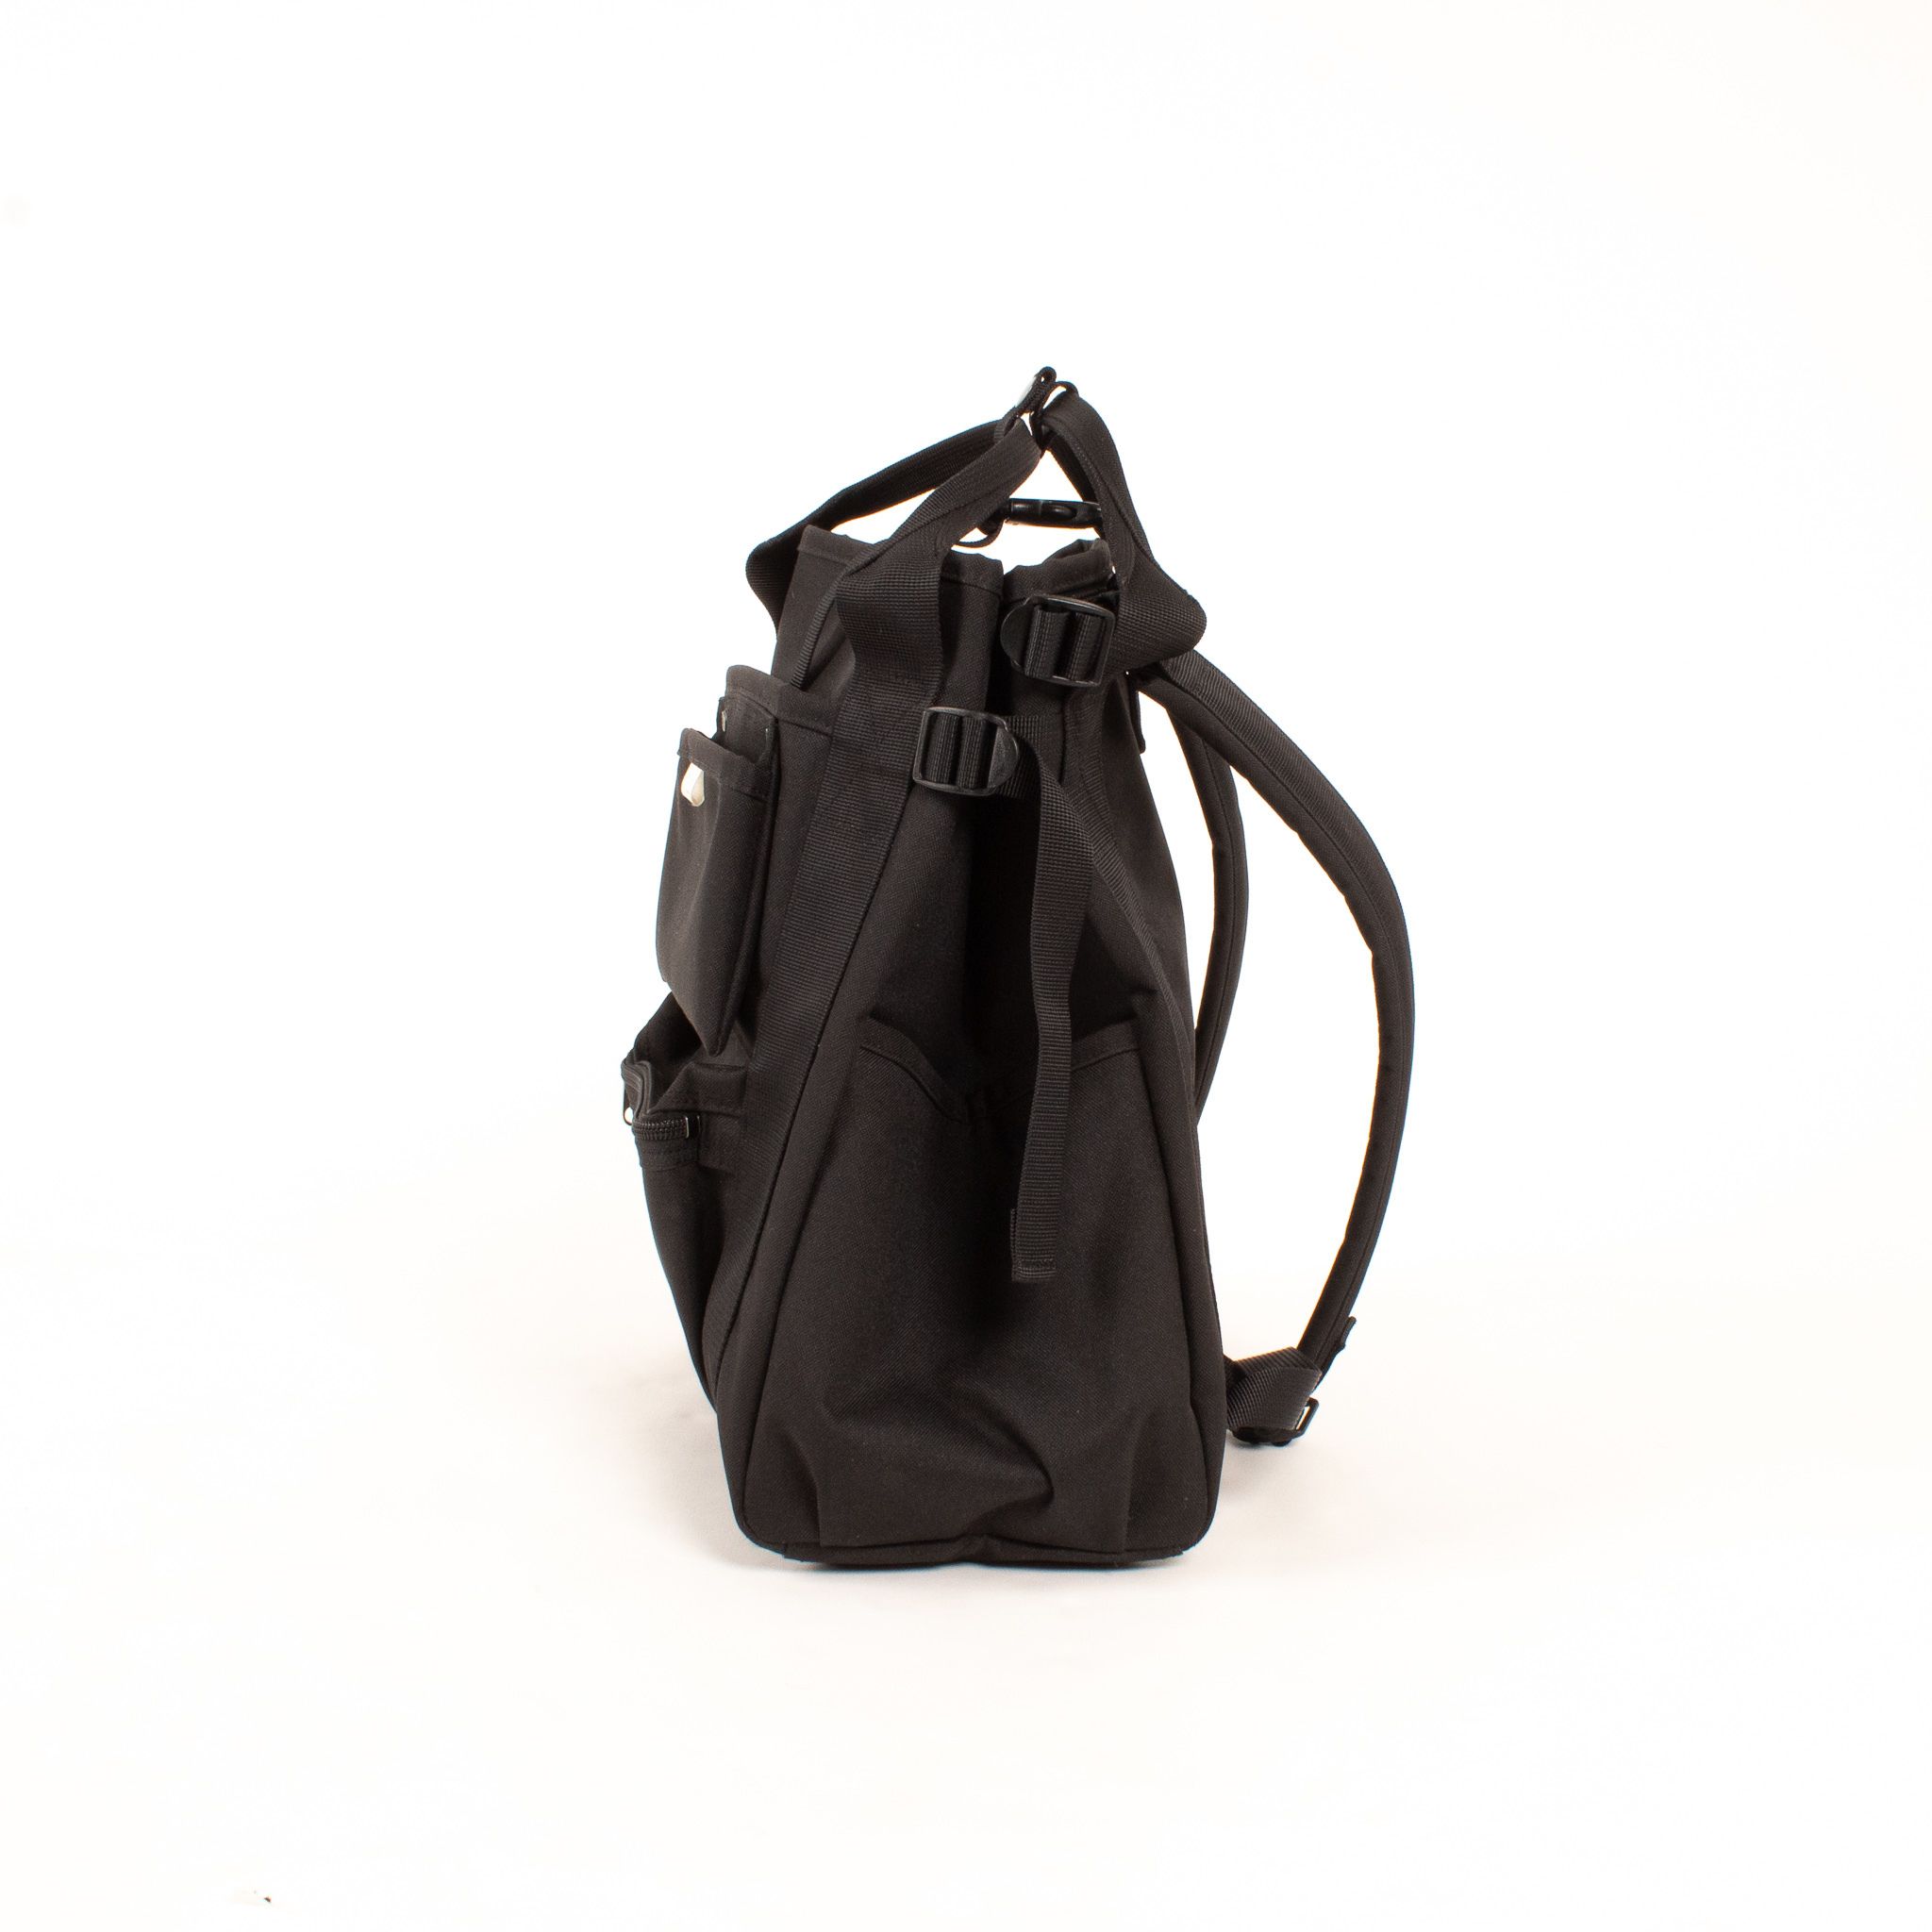 Porter-Yoshida & Co. x Beams Backpack by Frederick Guerrero 